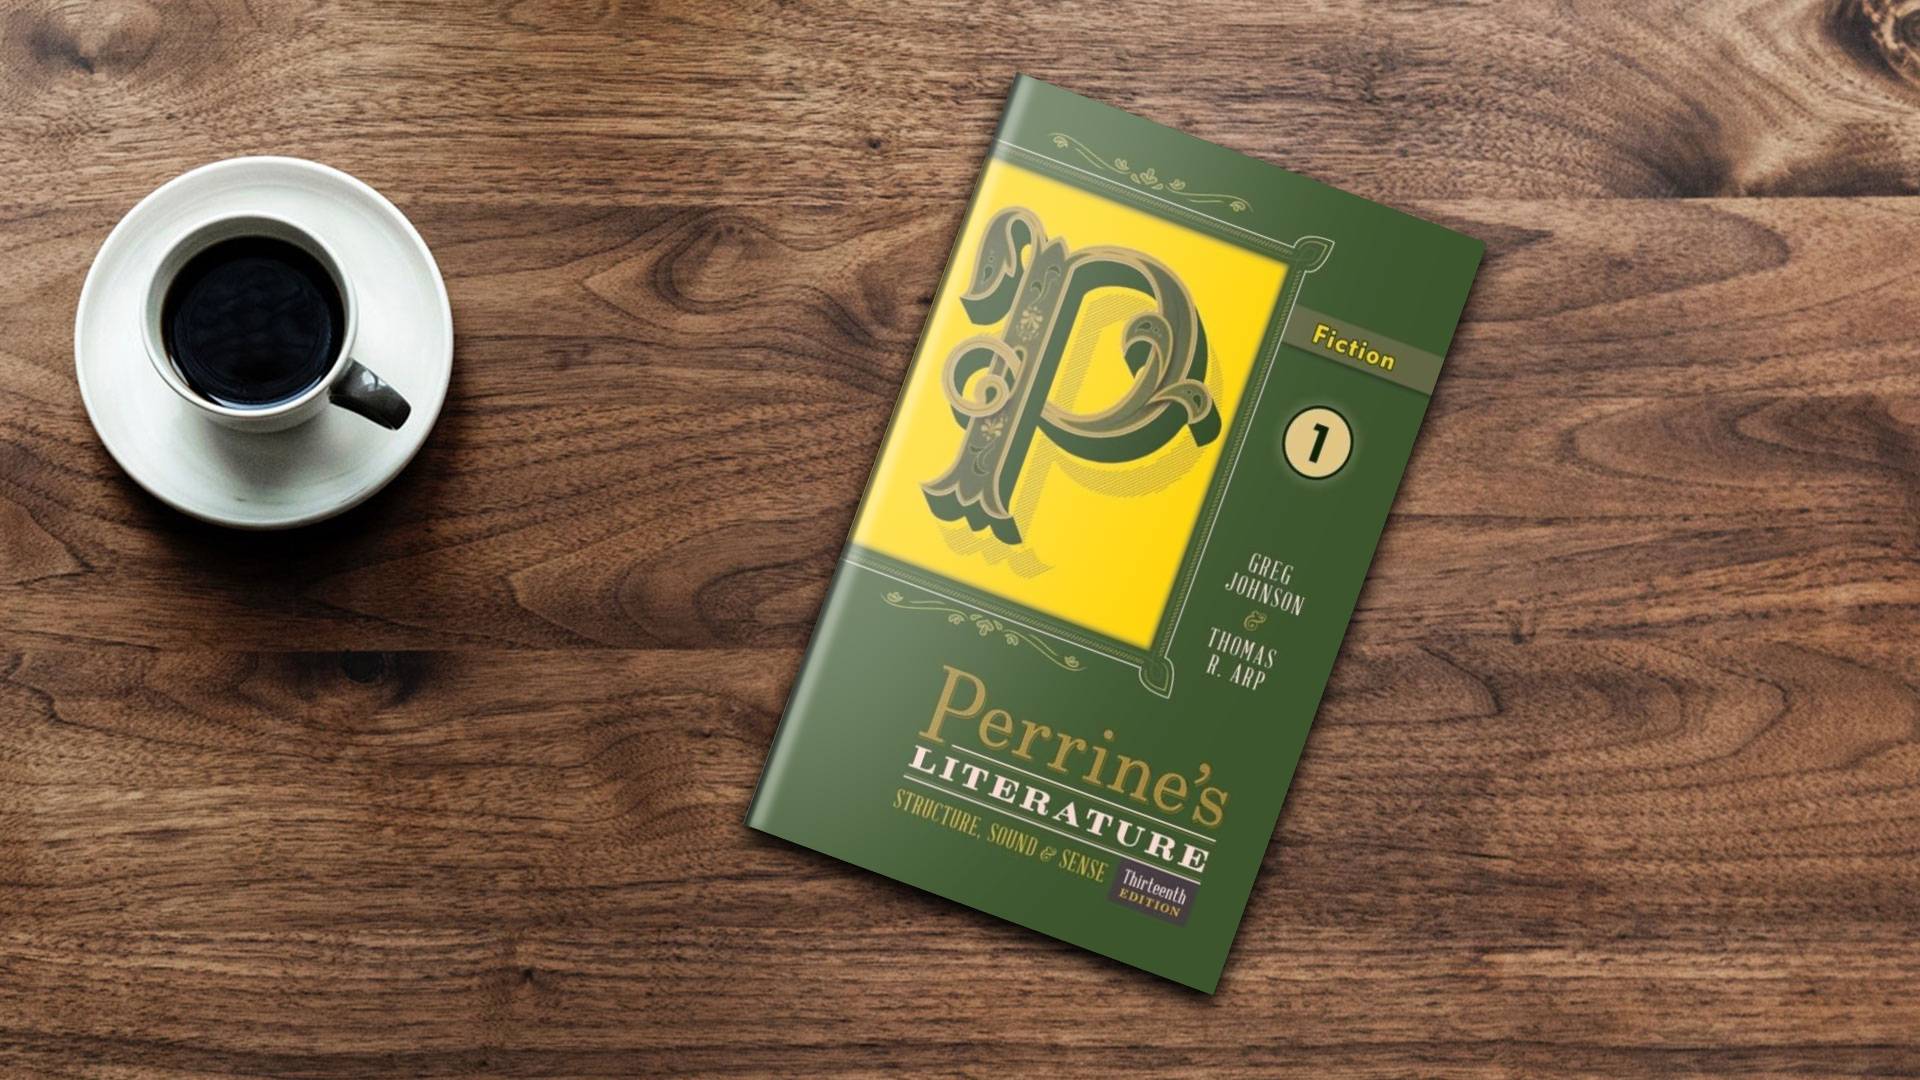 خرید کتاب زبان ادبیات دانشگاهی | فروشگاه اینترنتی کتاب زبان | Perrine's Literature Structure, Sound & Sense Fiction 1 Thirteenth Edition | پرینز لیتریچر ویرایش سیزدهم